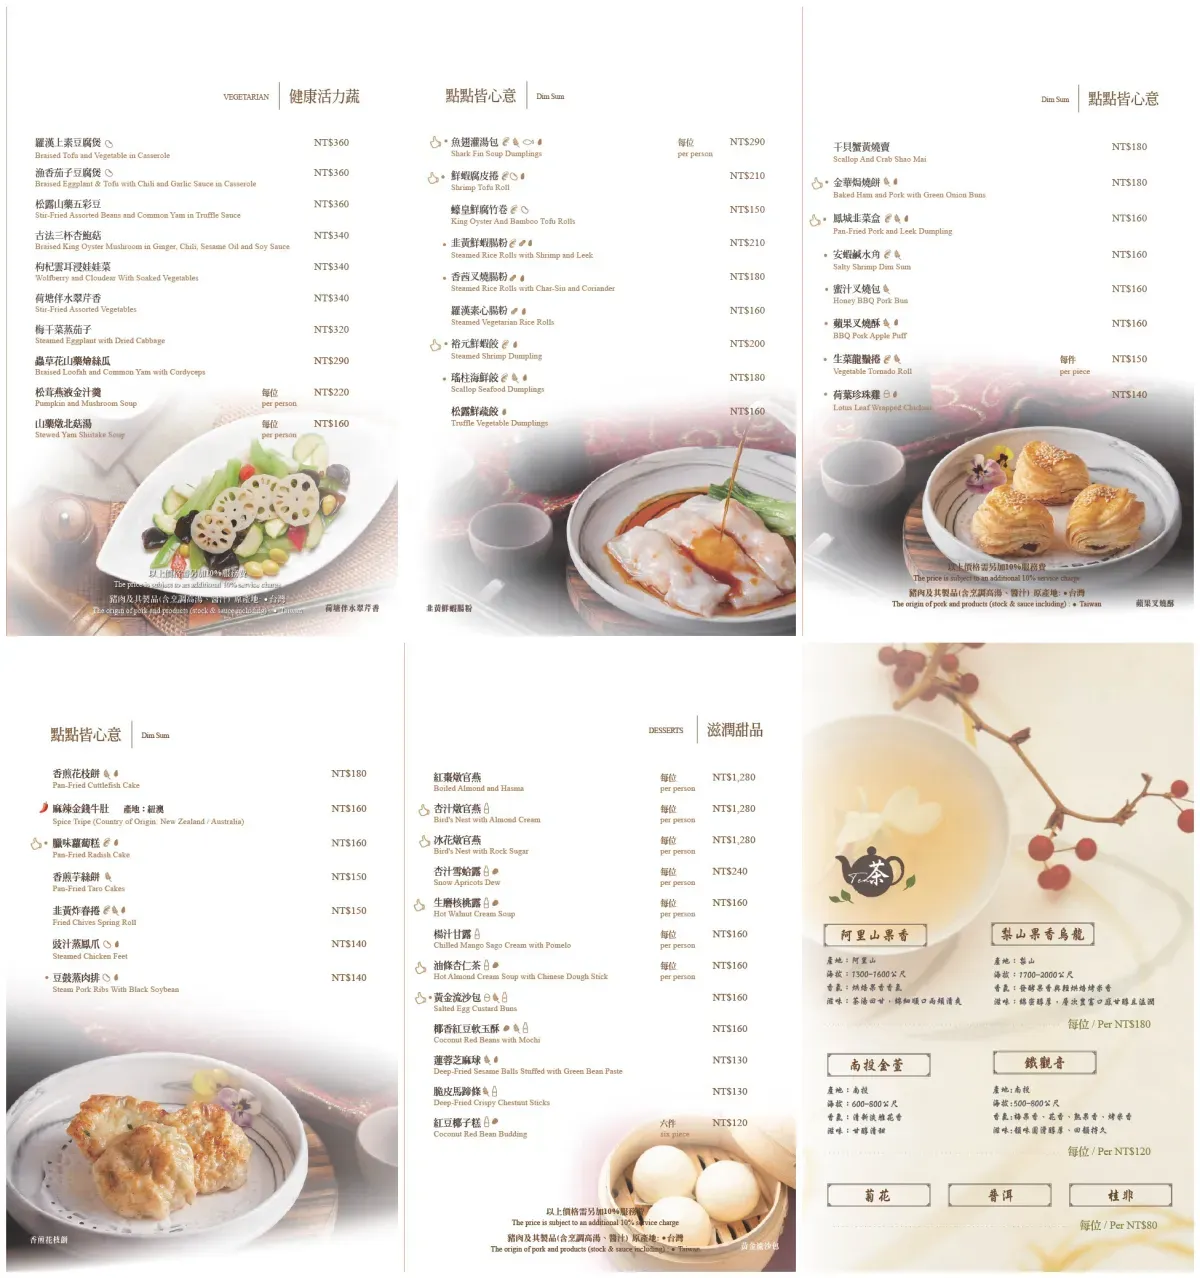 喆園鮑魚中餐廳 粵式料理與多元菜系 聚餐推薦